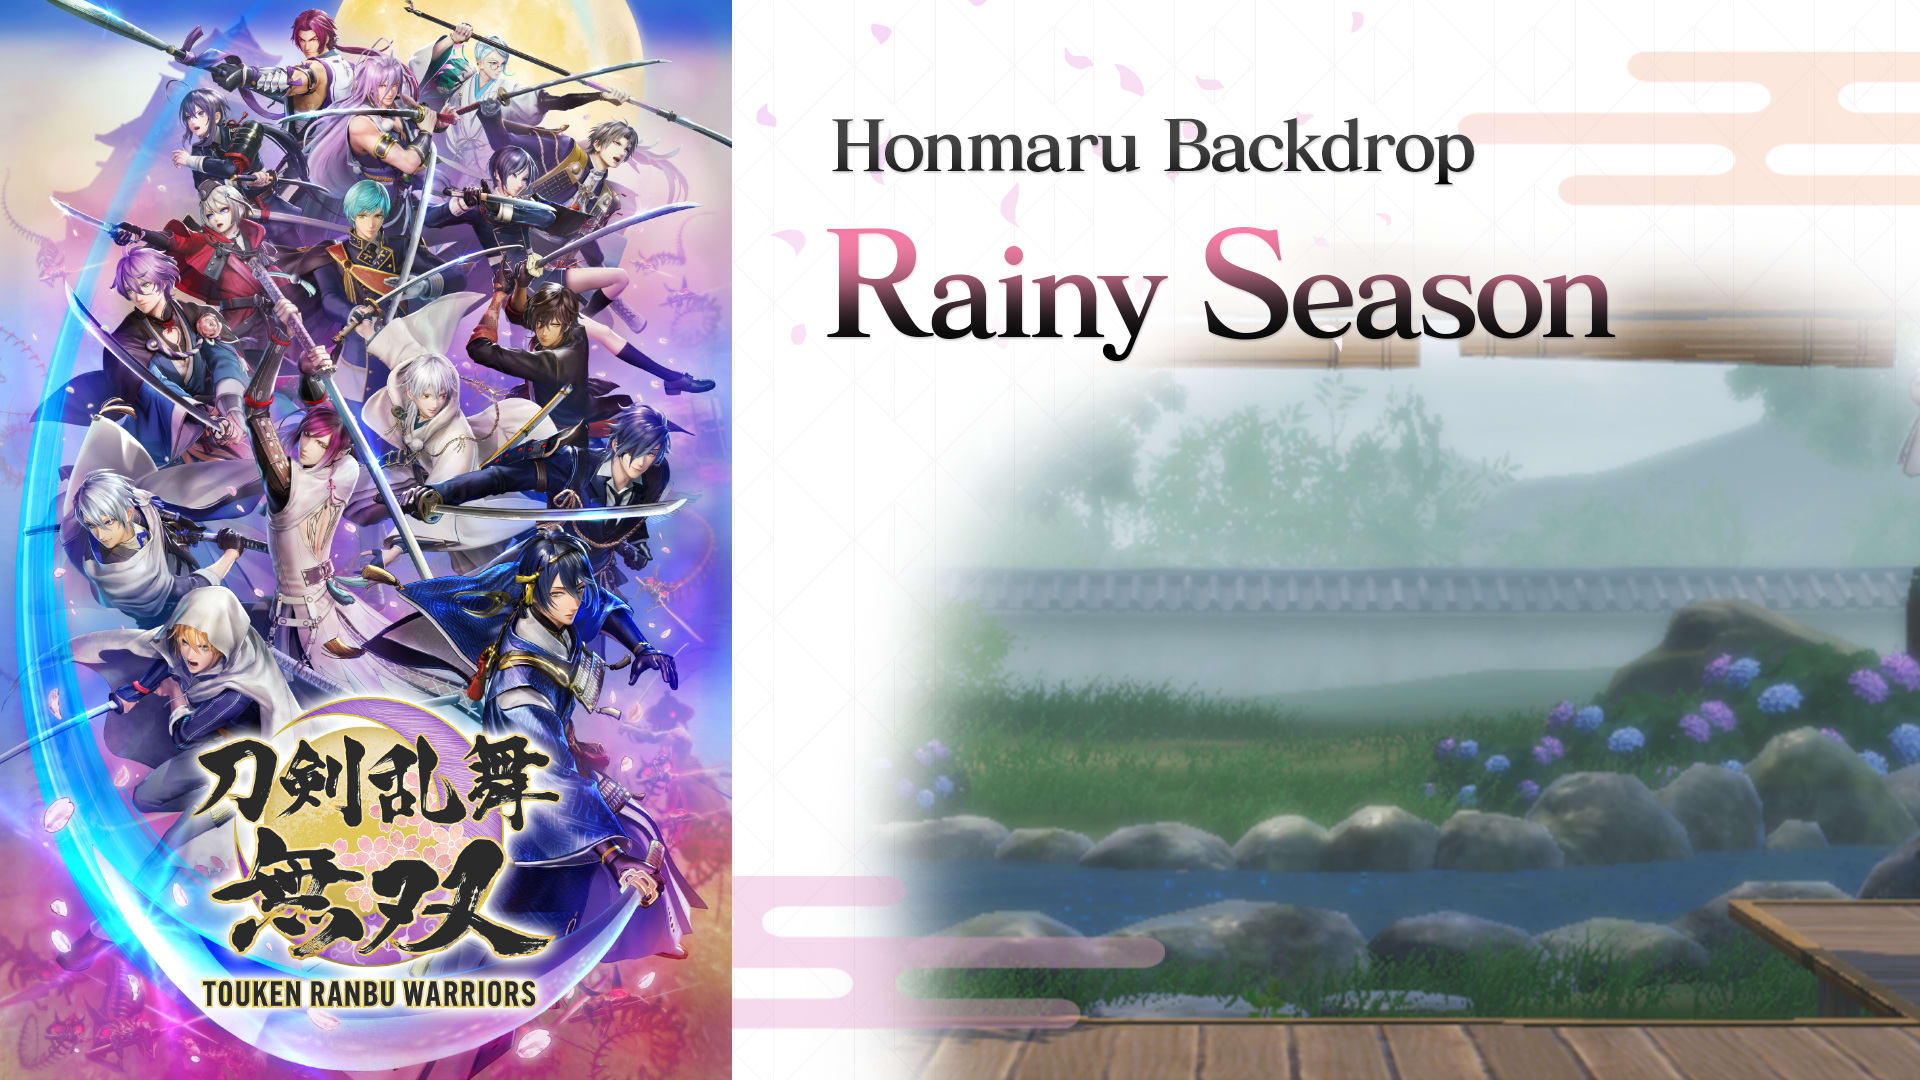 Honmaru Backdrop "Rainy Season" 1